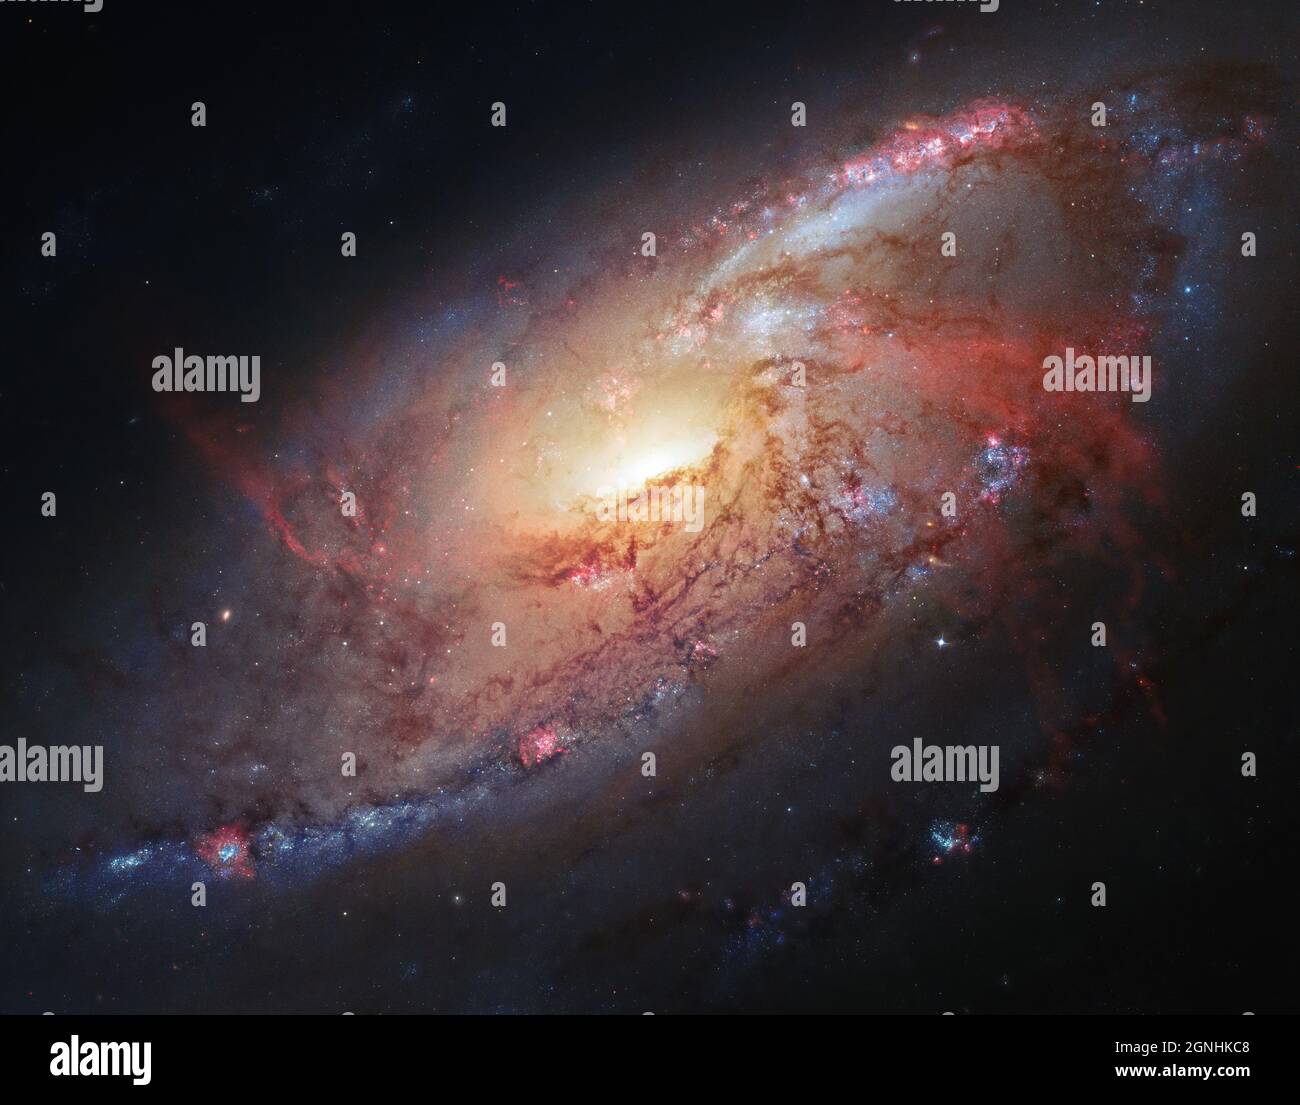 M106 è una galassia attiva Seyfert II. Si ritiene che grandi quantità di gas dalla galassia cadano e alimentino un buco nero supermassiccio contenuto nel nucleo. Conosciuto anche come NGC 4258, M106 si trova a 23.5 milioni di anni luce, nella costellazione Canes Venatici. . Fonte immagine NASA/ESA Hubble Space Telescope Foto Stock